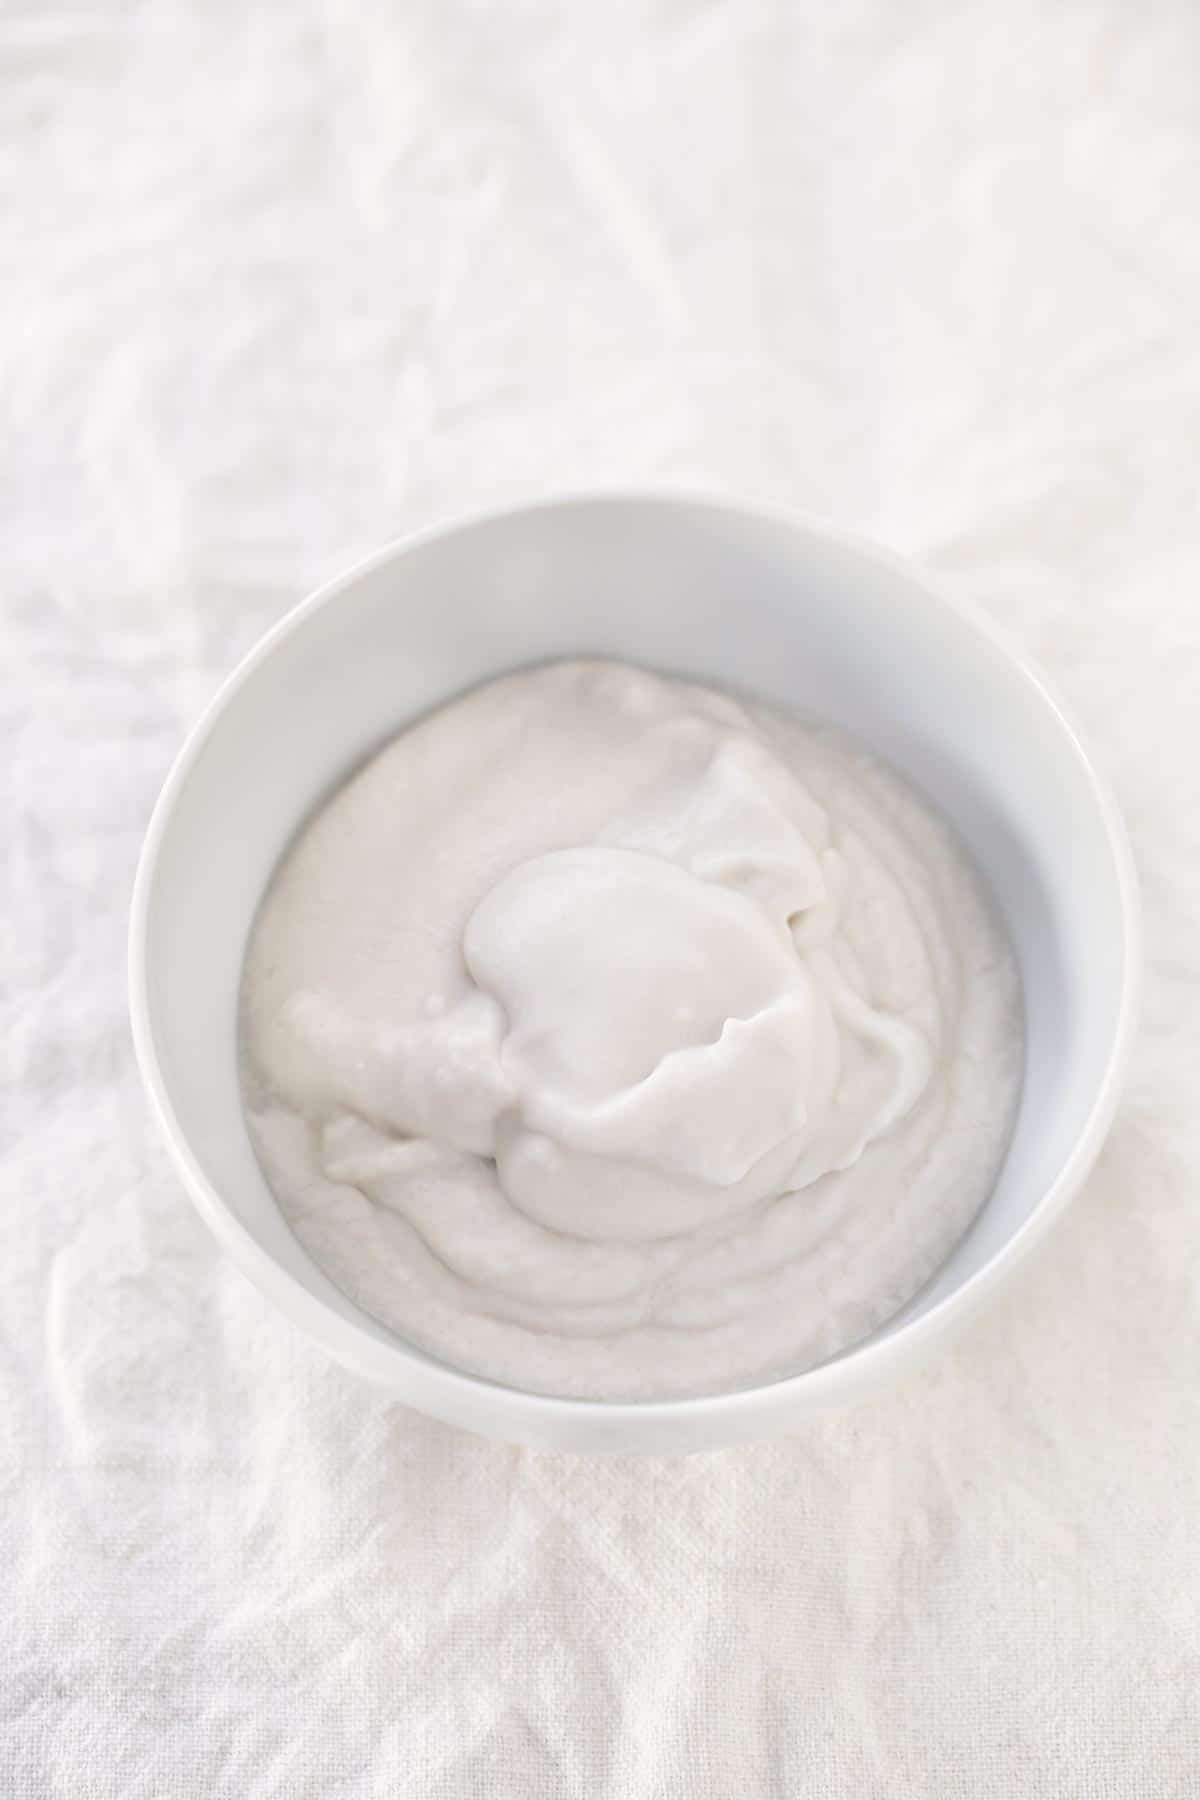 Yogur Vegano de Coco (2 Ingredientes).- Para hacer este yogur de coco vegano sólo se necesitan 2 ingredientes. Es una receta muy simple y rápida. ¡Es mi yogur casero preferido!